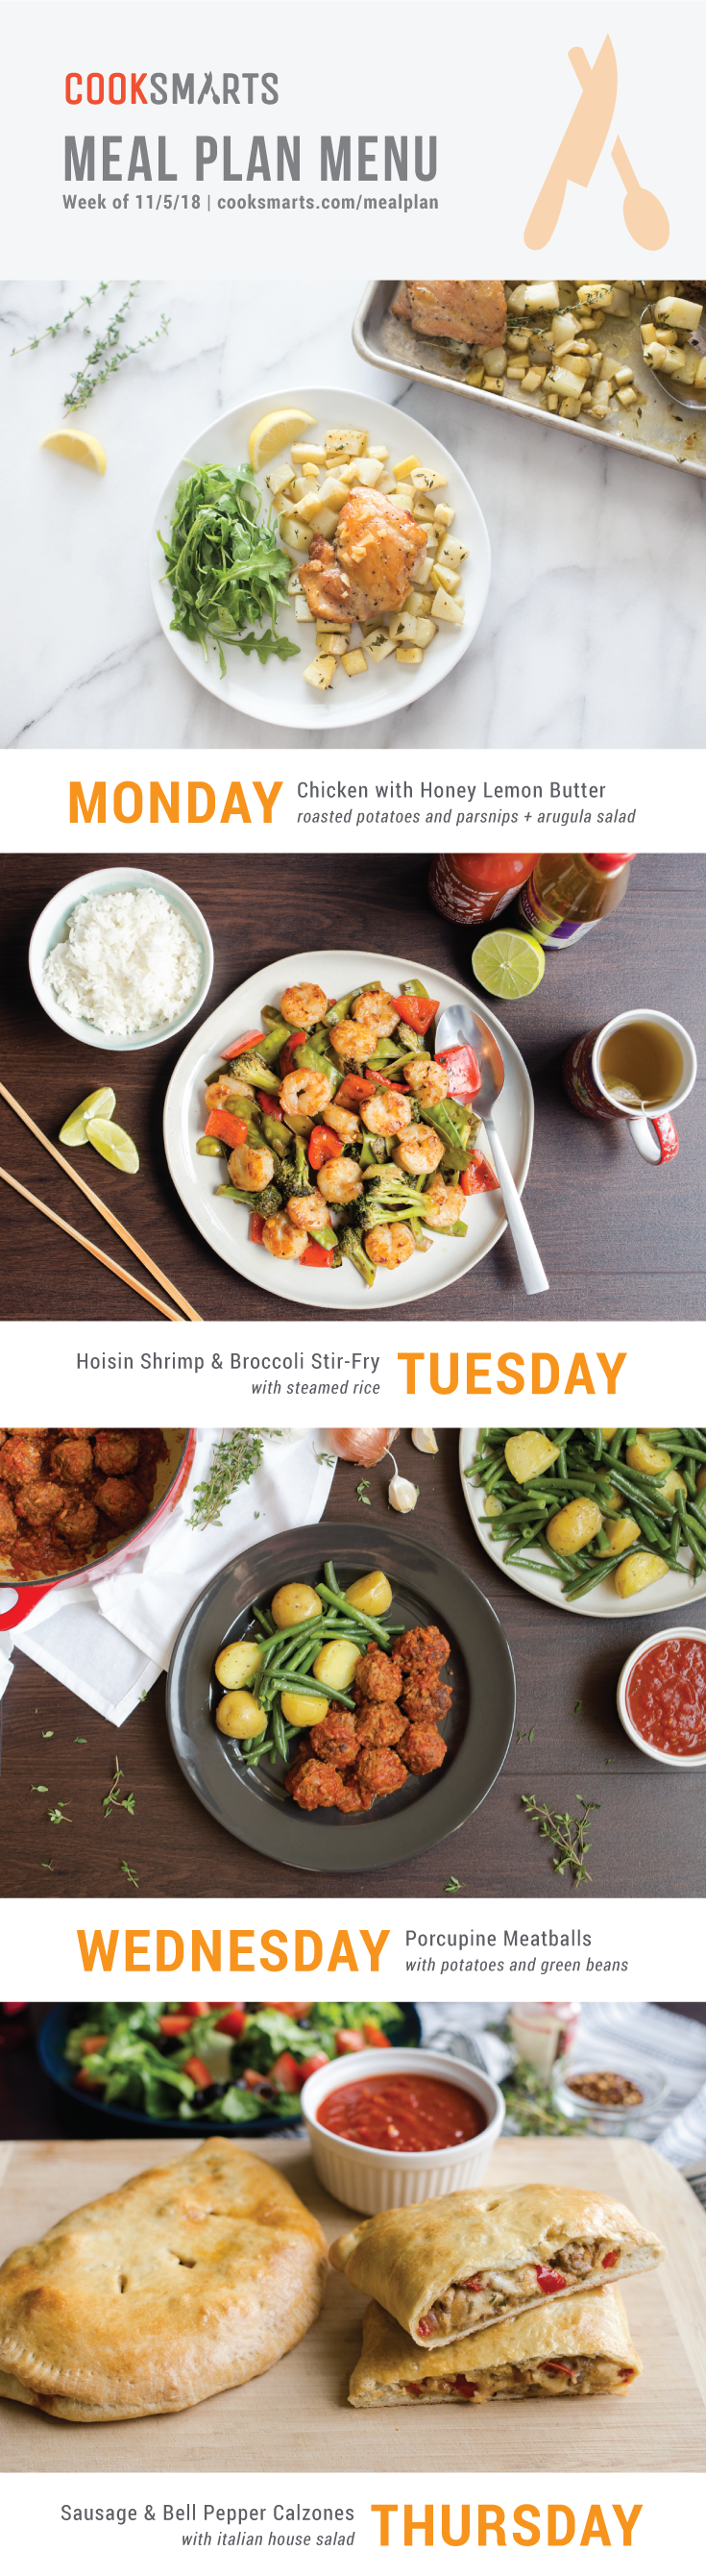 Weekly Meal Planner | Menu for Week of 11/5/18 via Cook Smarts